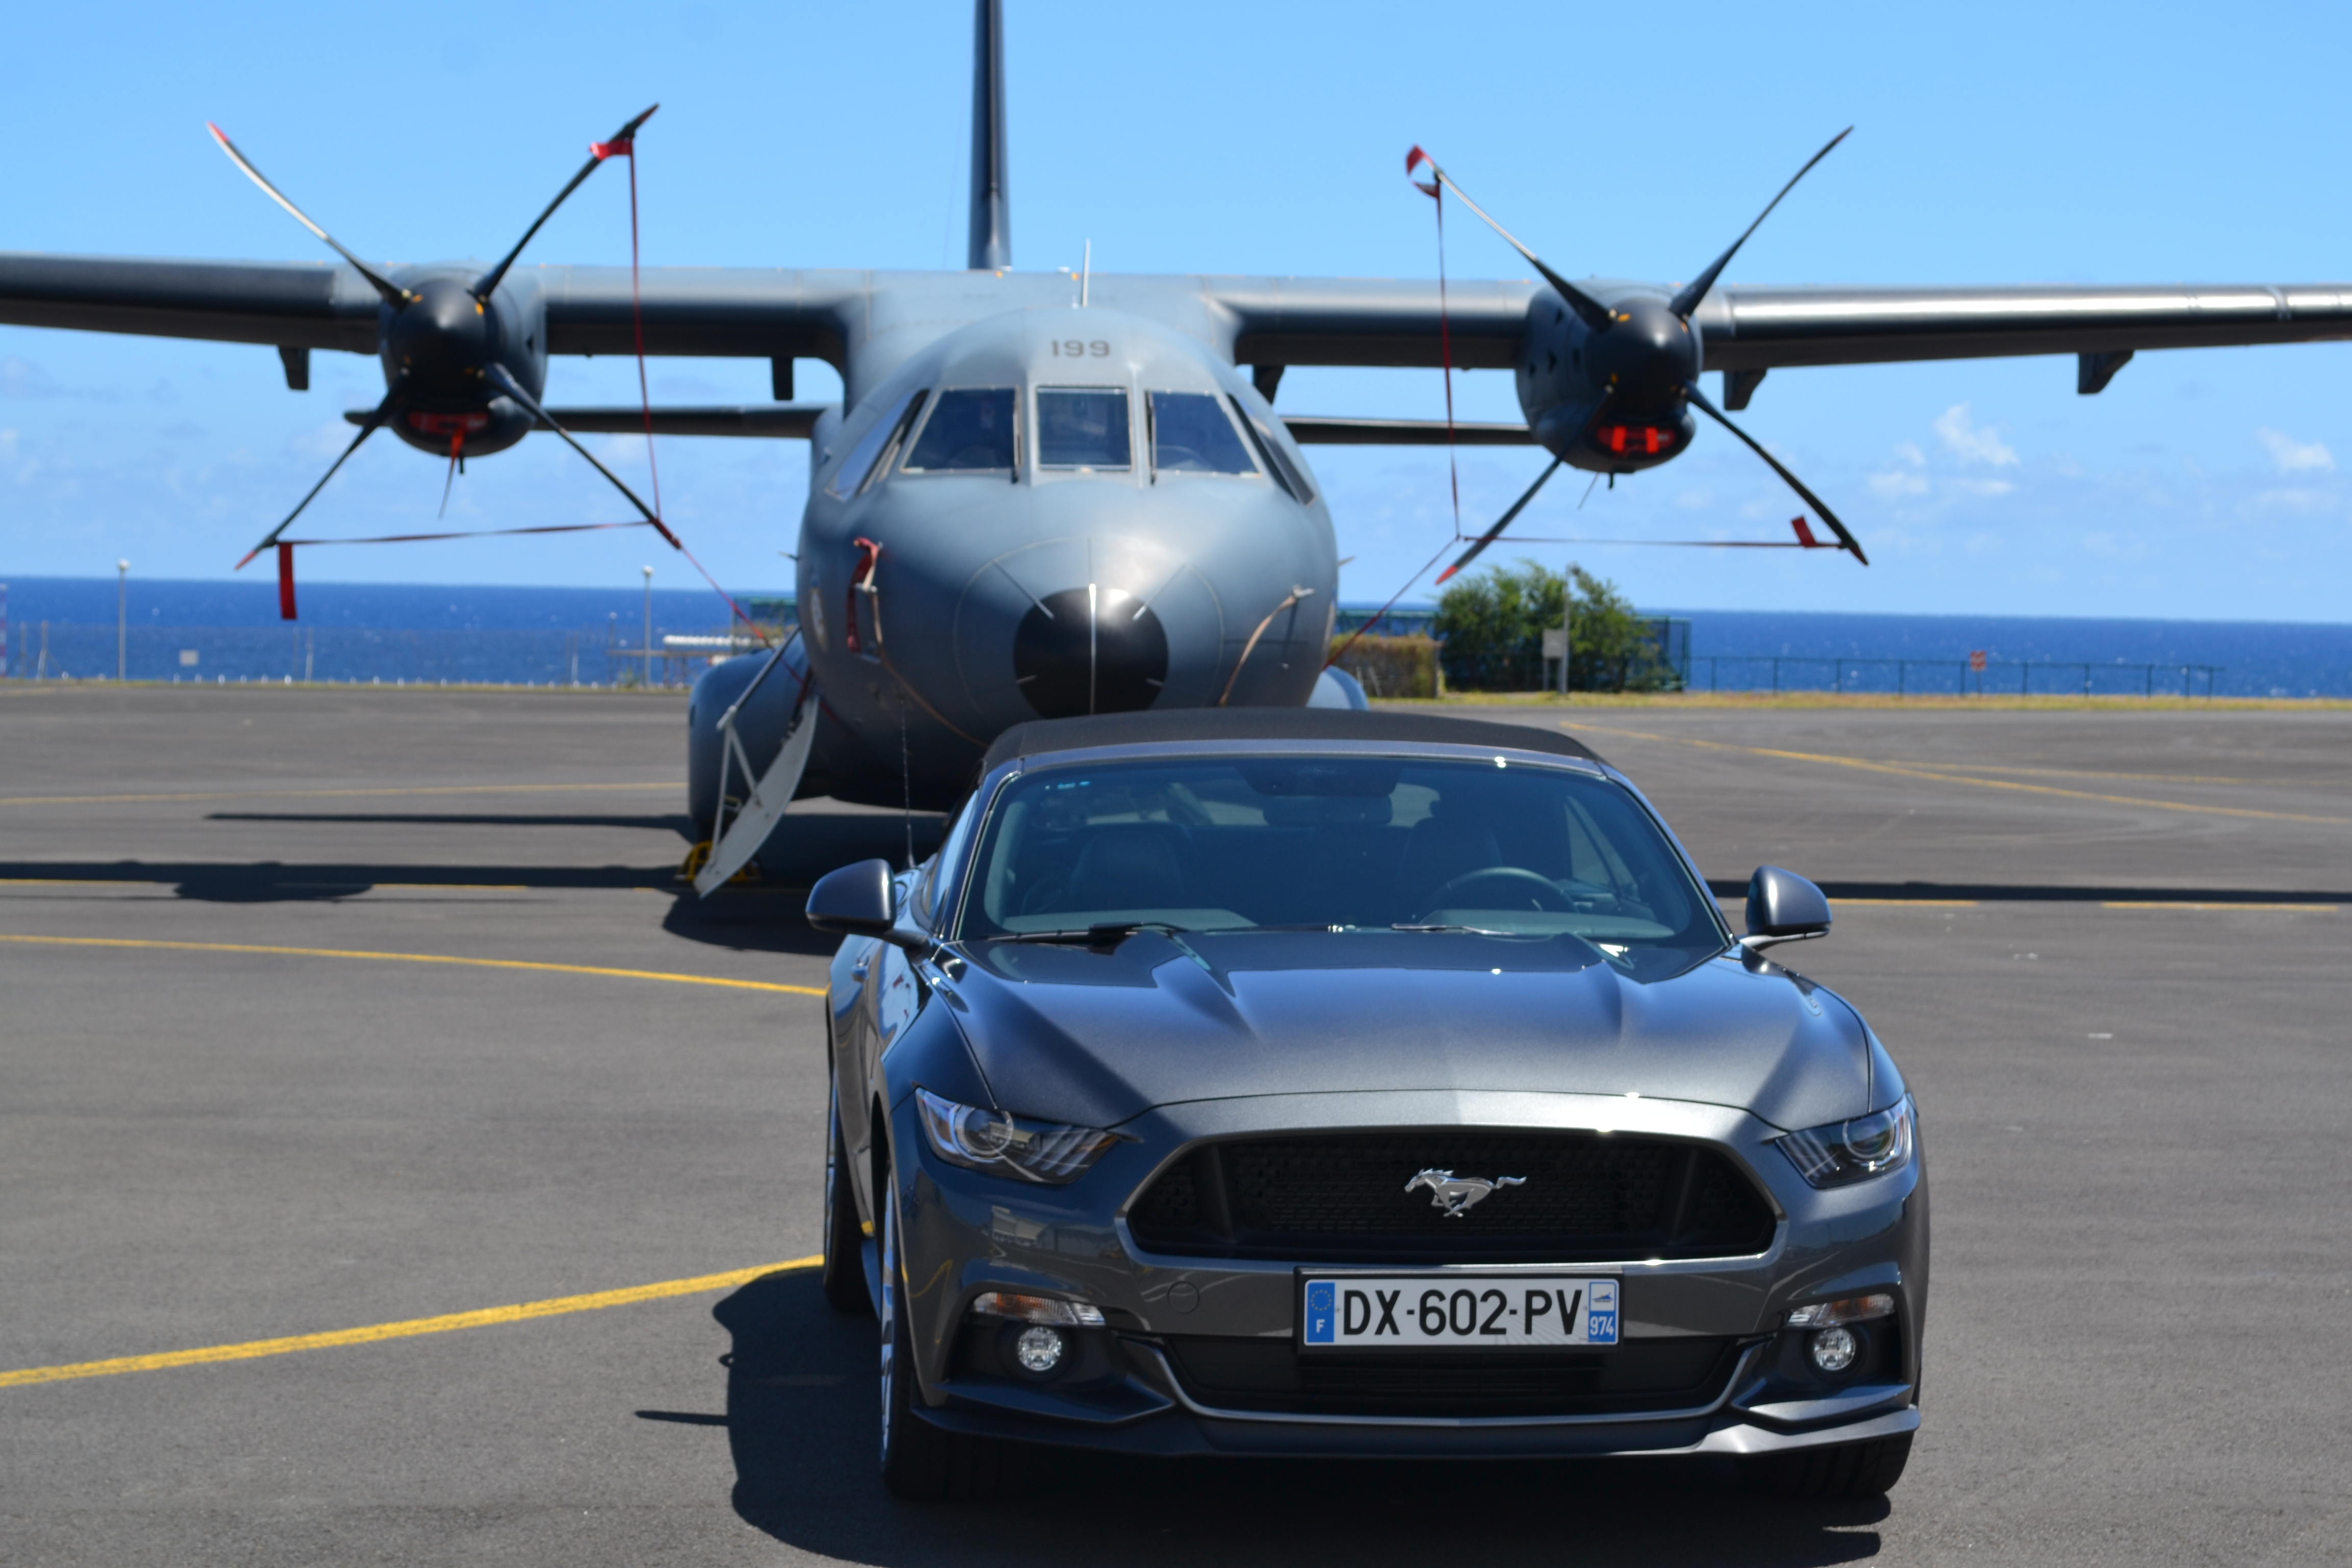 La Ford Mustang et le CASA sur le tarmac de la base aérienne Roland Garros